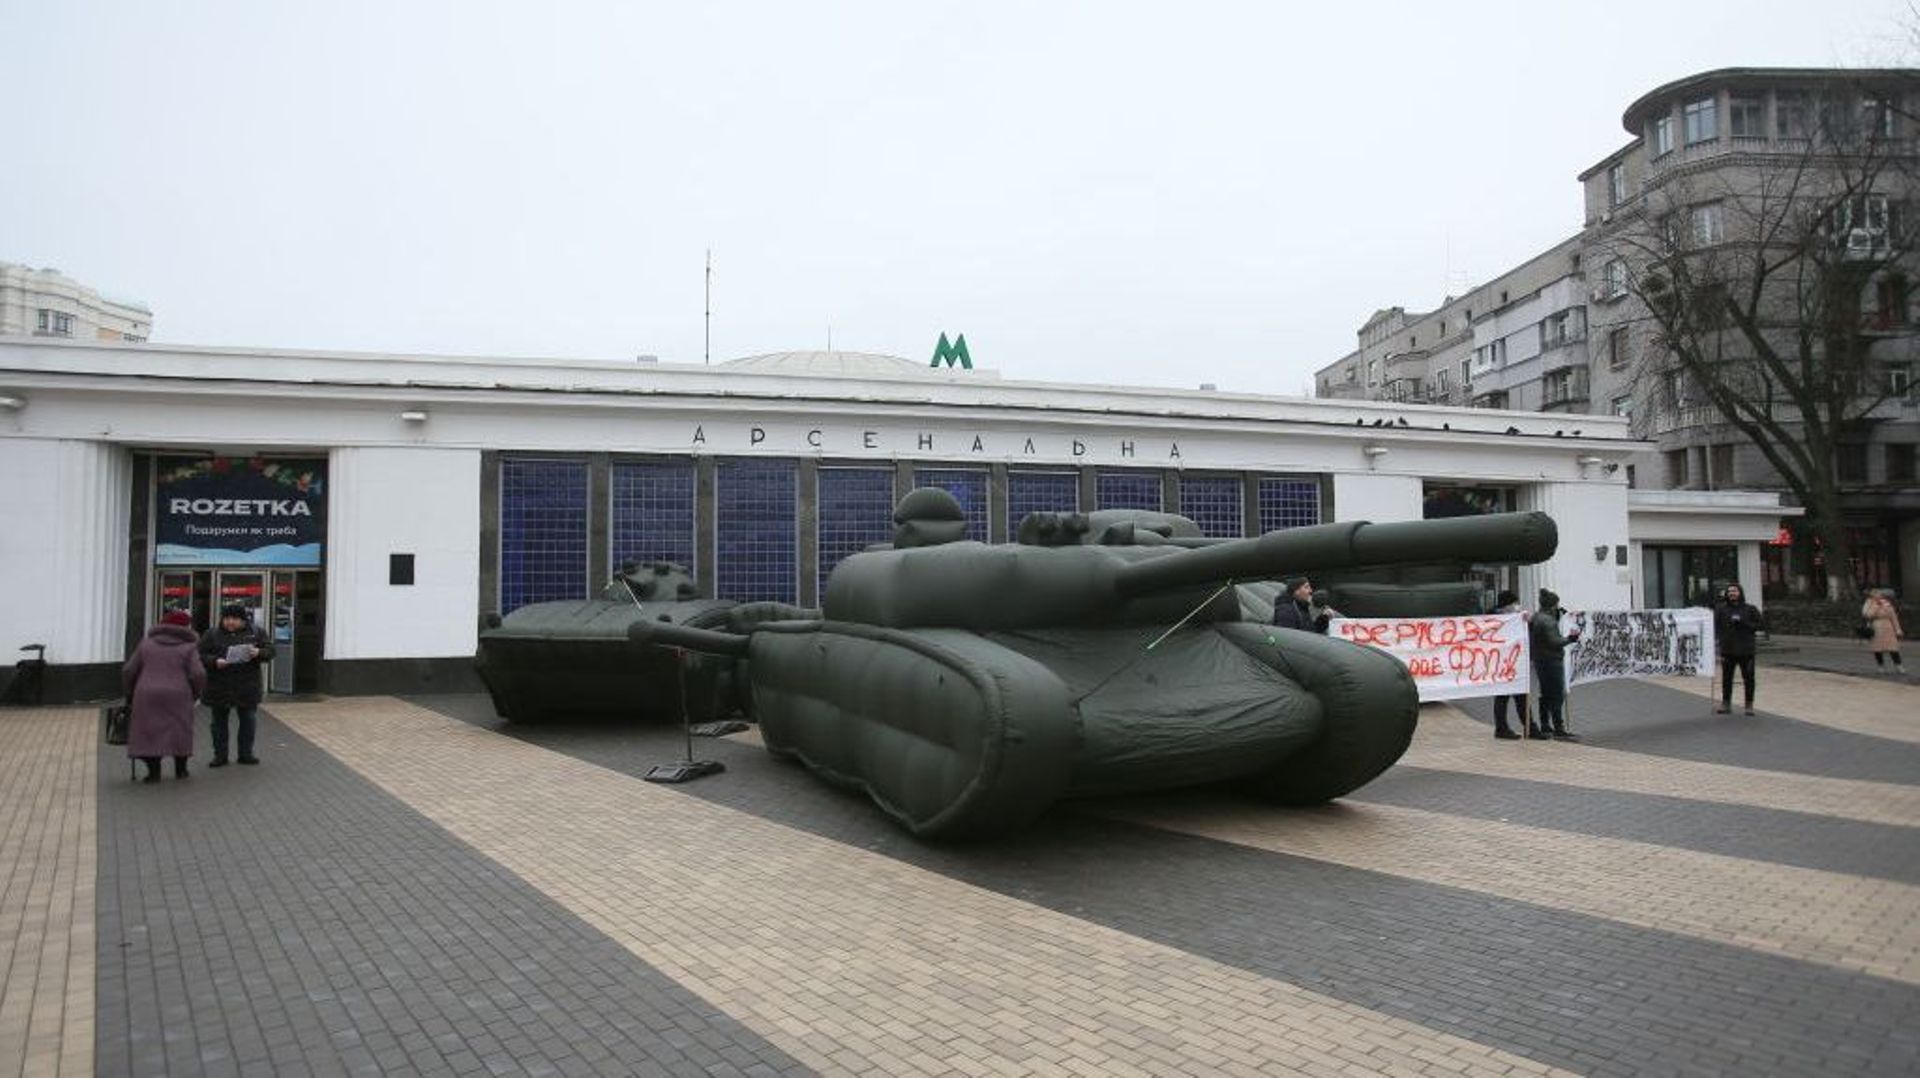 Image d’illustration : des chars gonflables exposés à Kiev, le 16 décembre 2021.